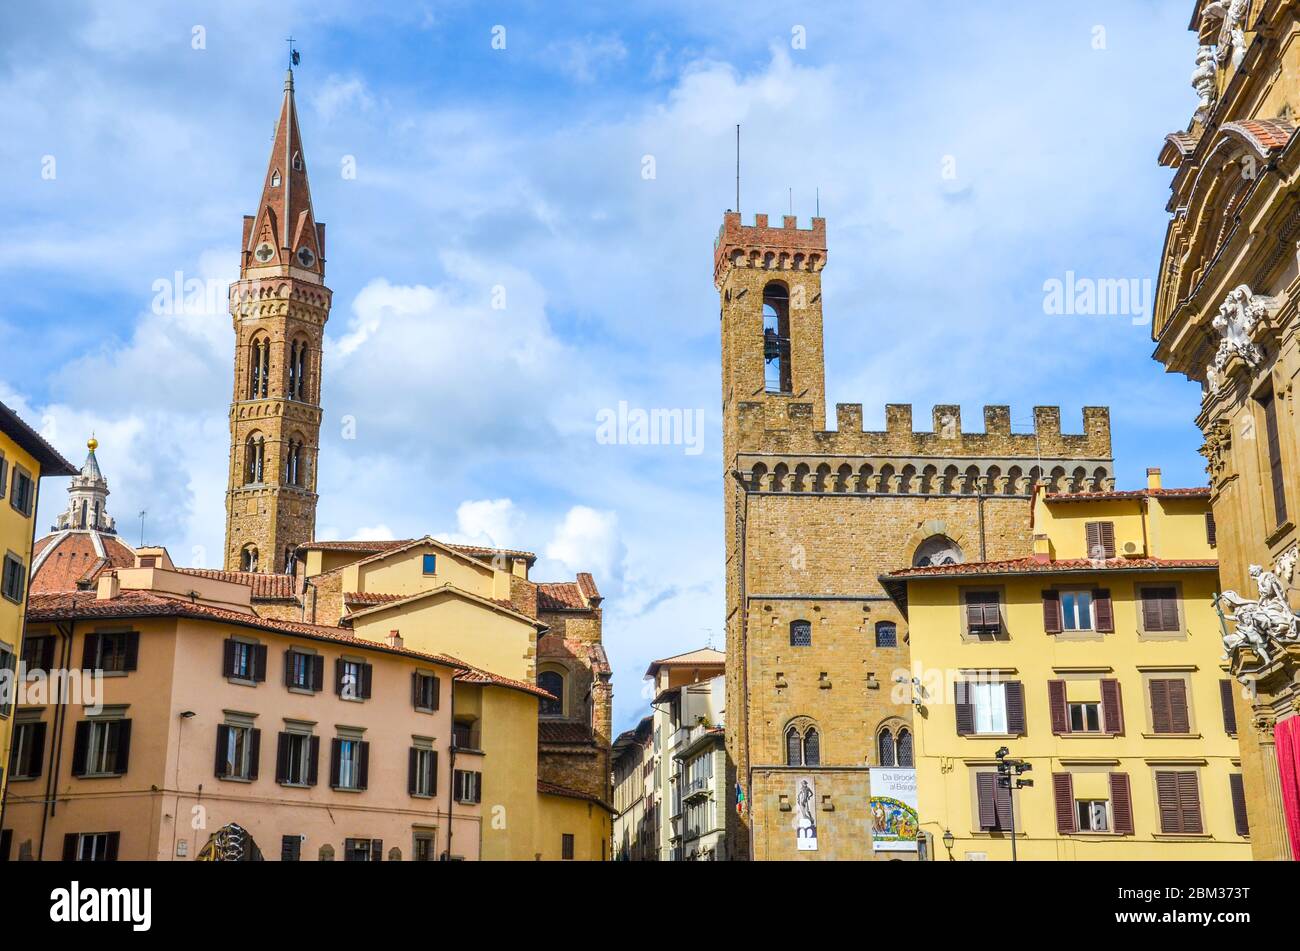 Florenz, Toskana, Italien - 31. März 2018: Der Turm der Badia Fiorentina und das Nationalmuseum von Bargello im historischen Zentrum der schönen italienischen Stadt. Horizontales Foto. Stockfoto